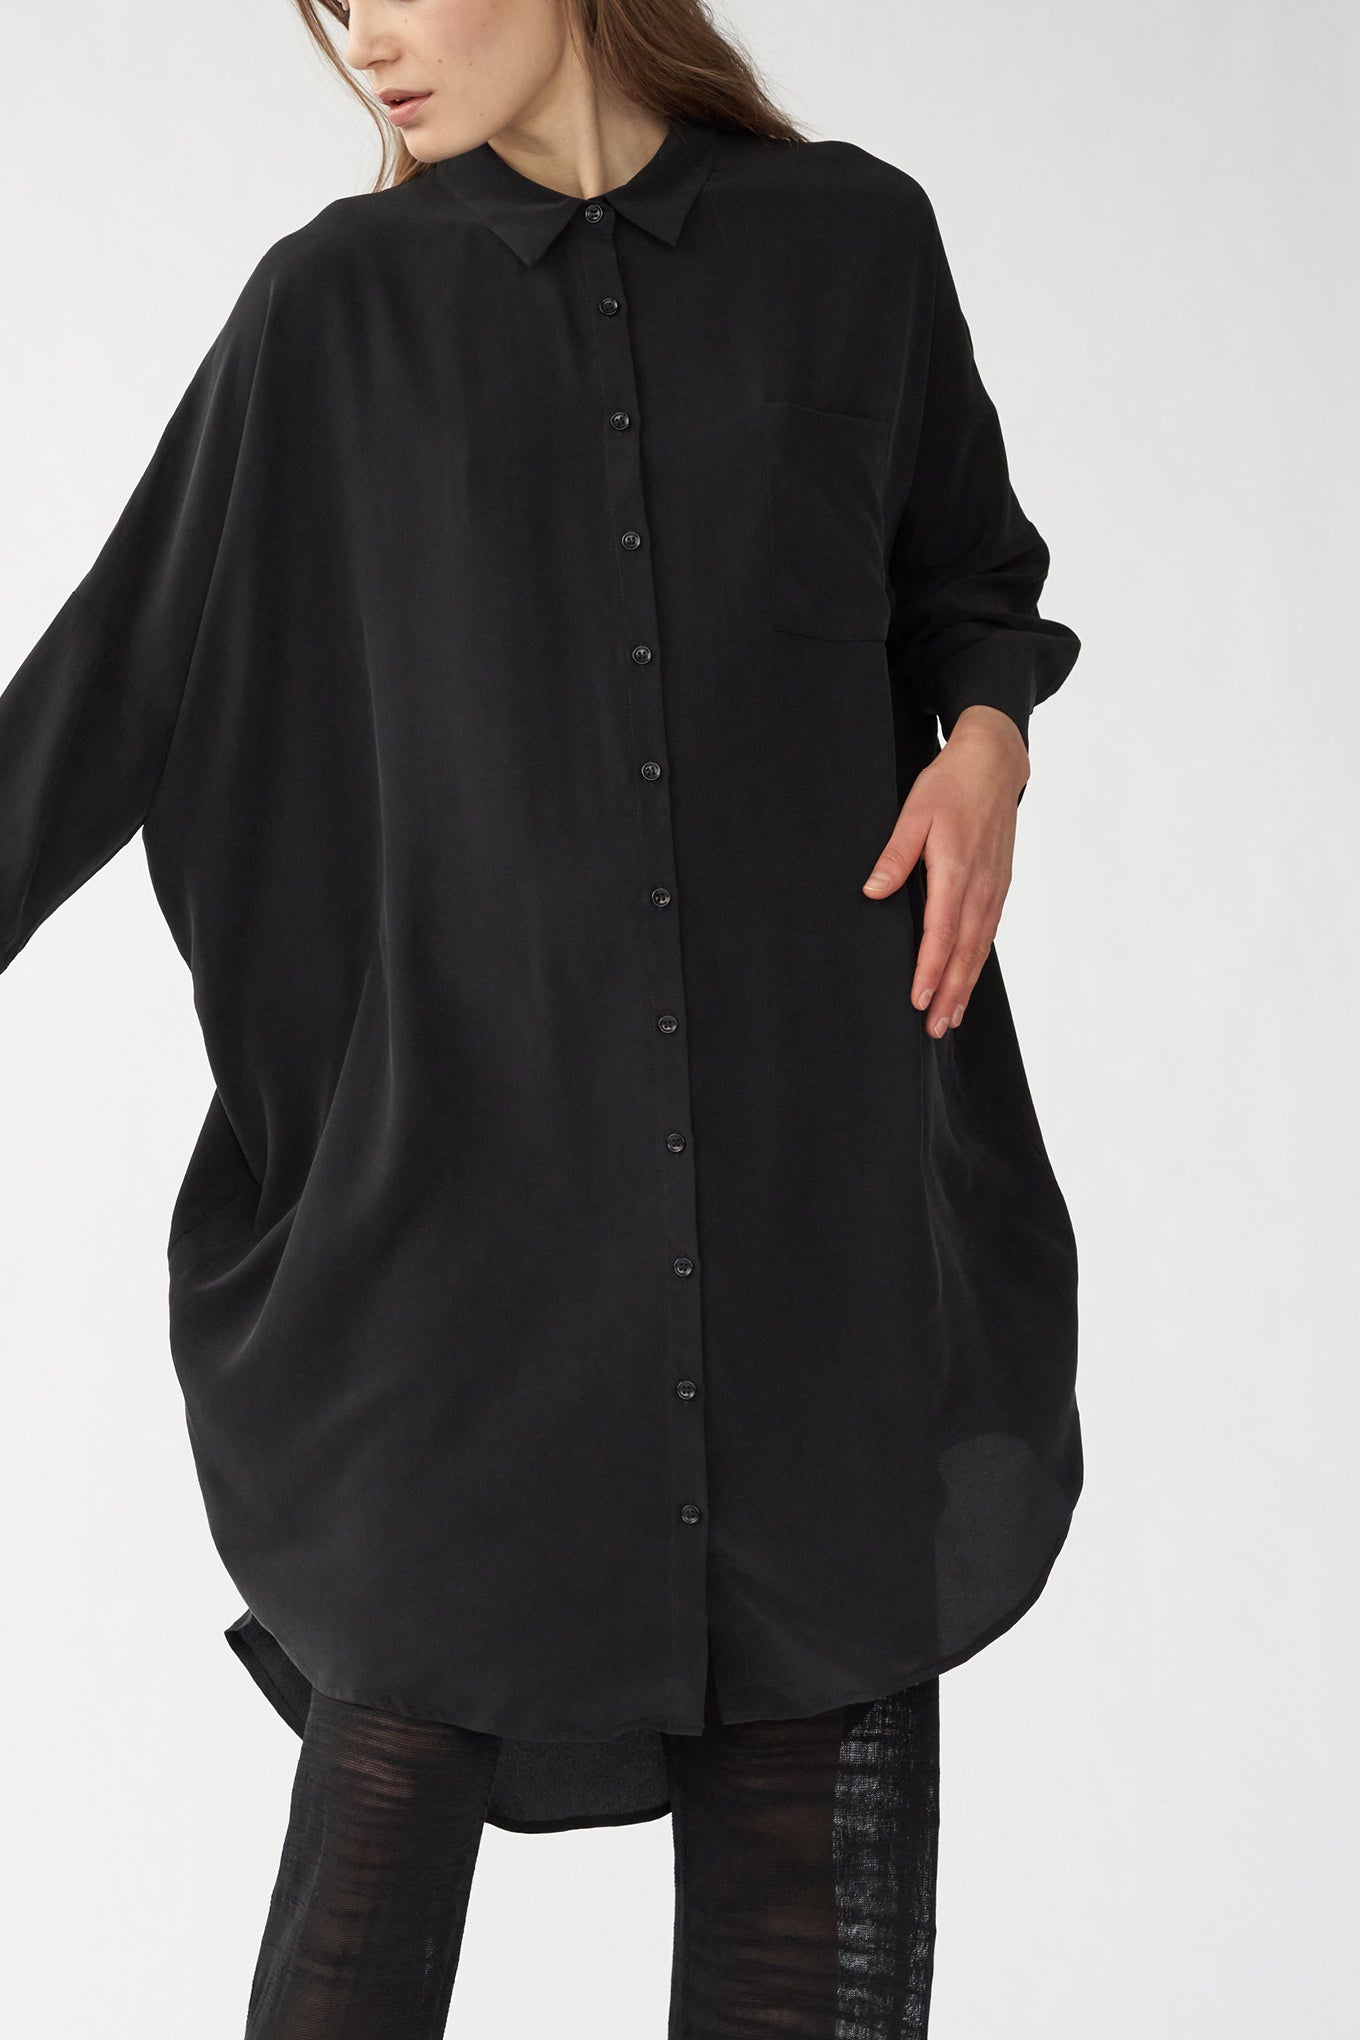 OVERSIZE SHIRT DRESS - BLACK - SAND WASHED CREPE DE CHINE